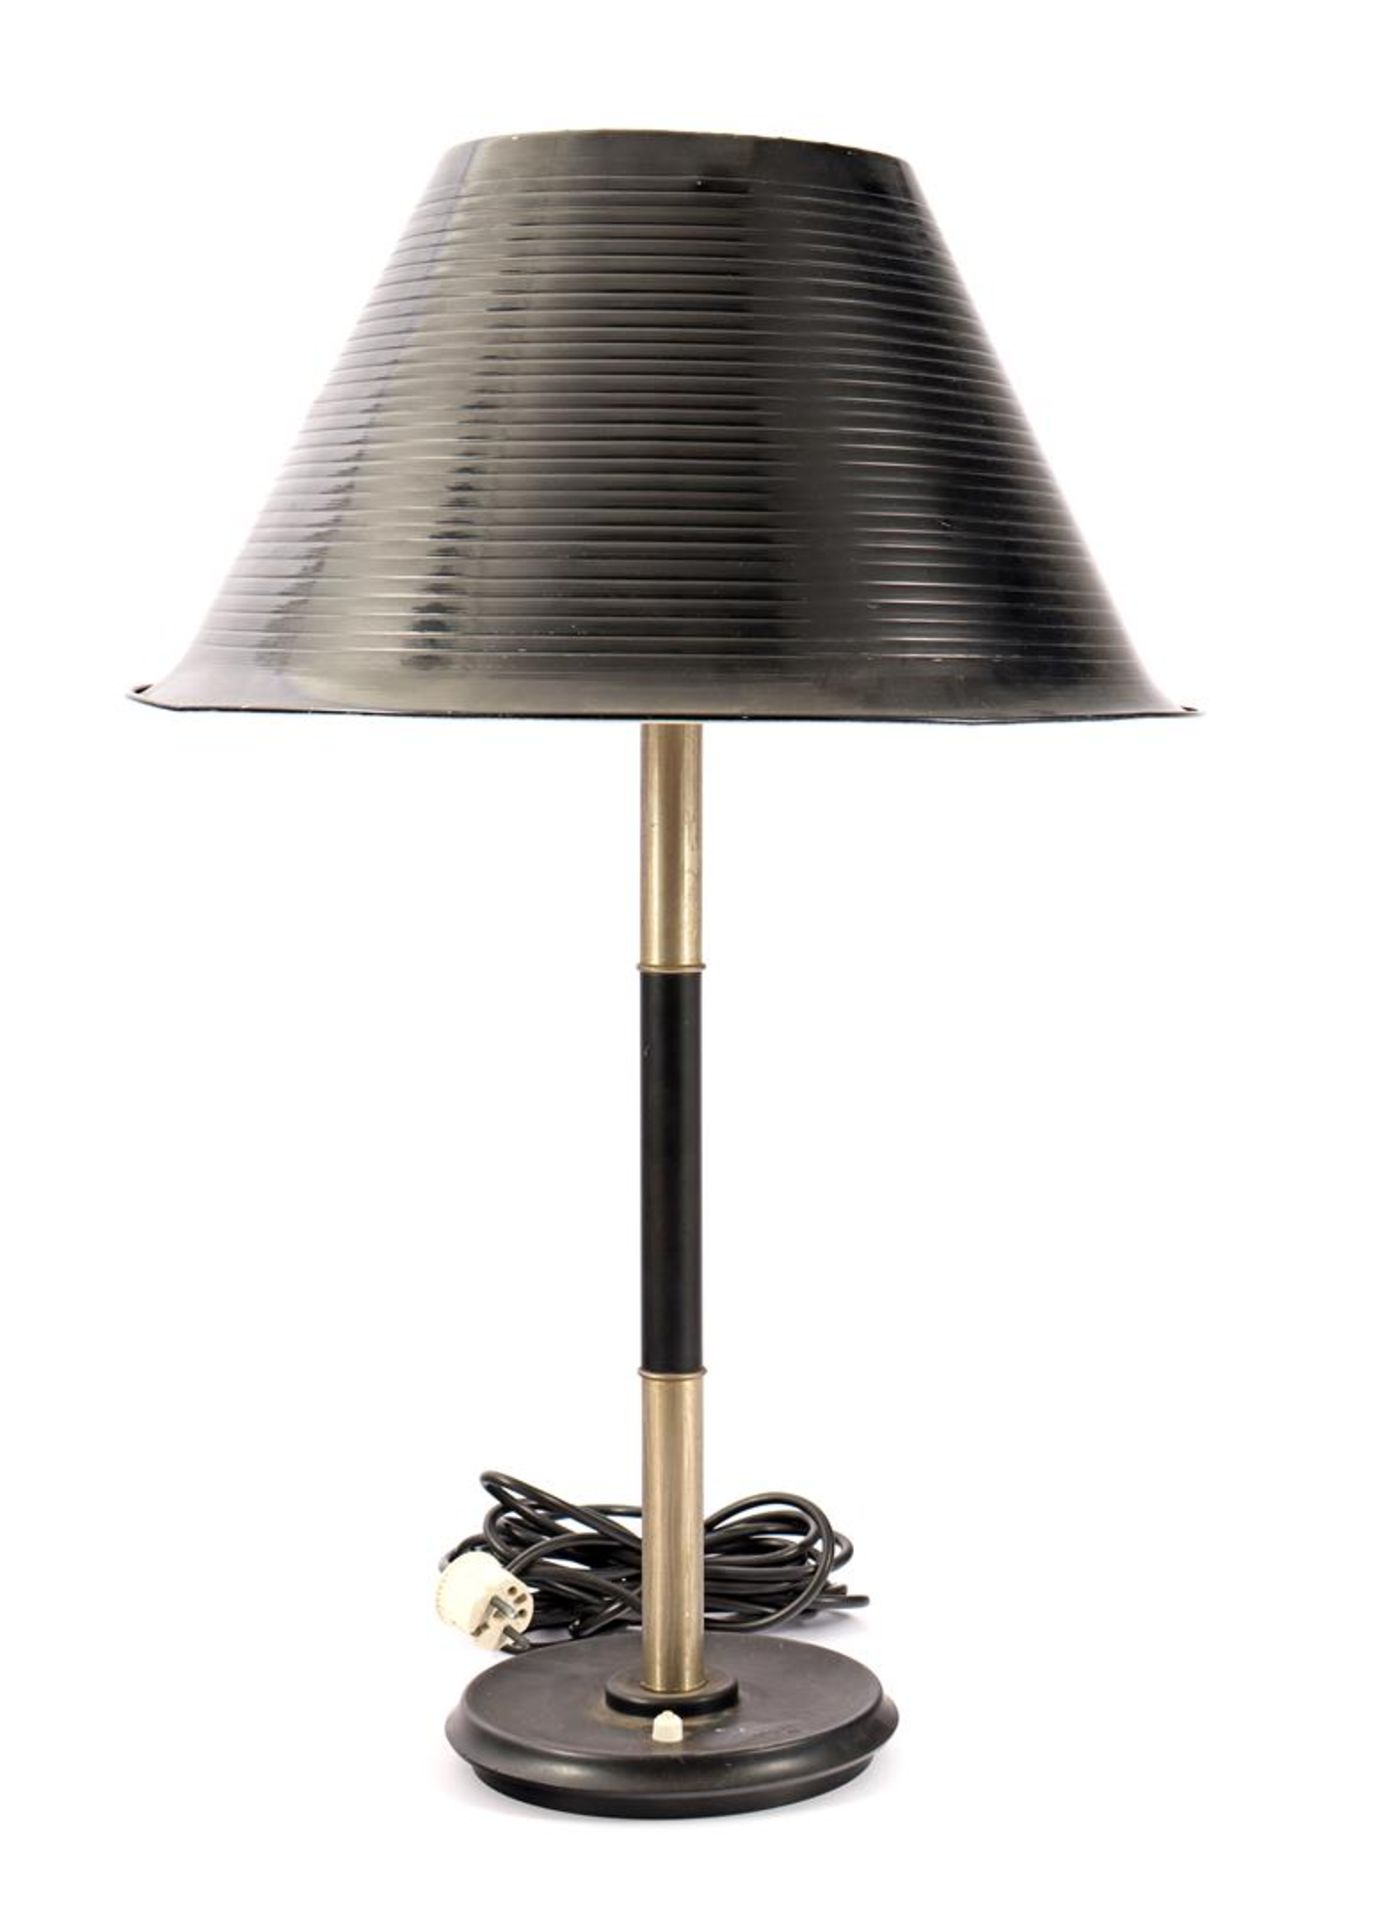 Giso table lamp by Gispen, model 5020